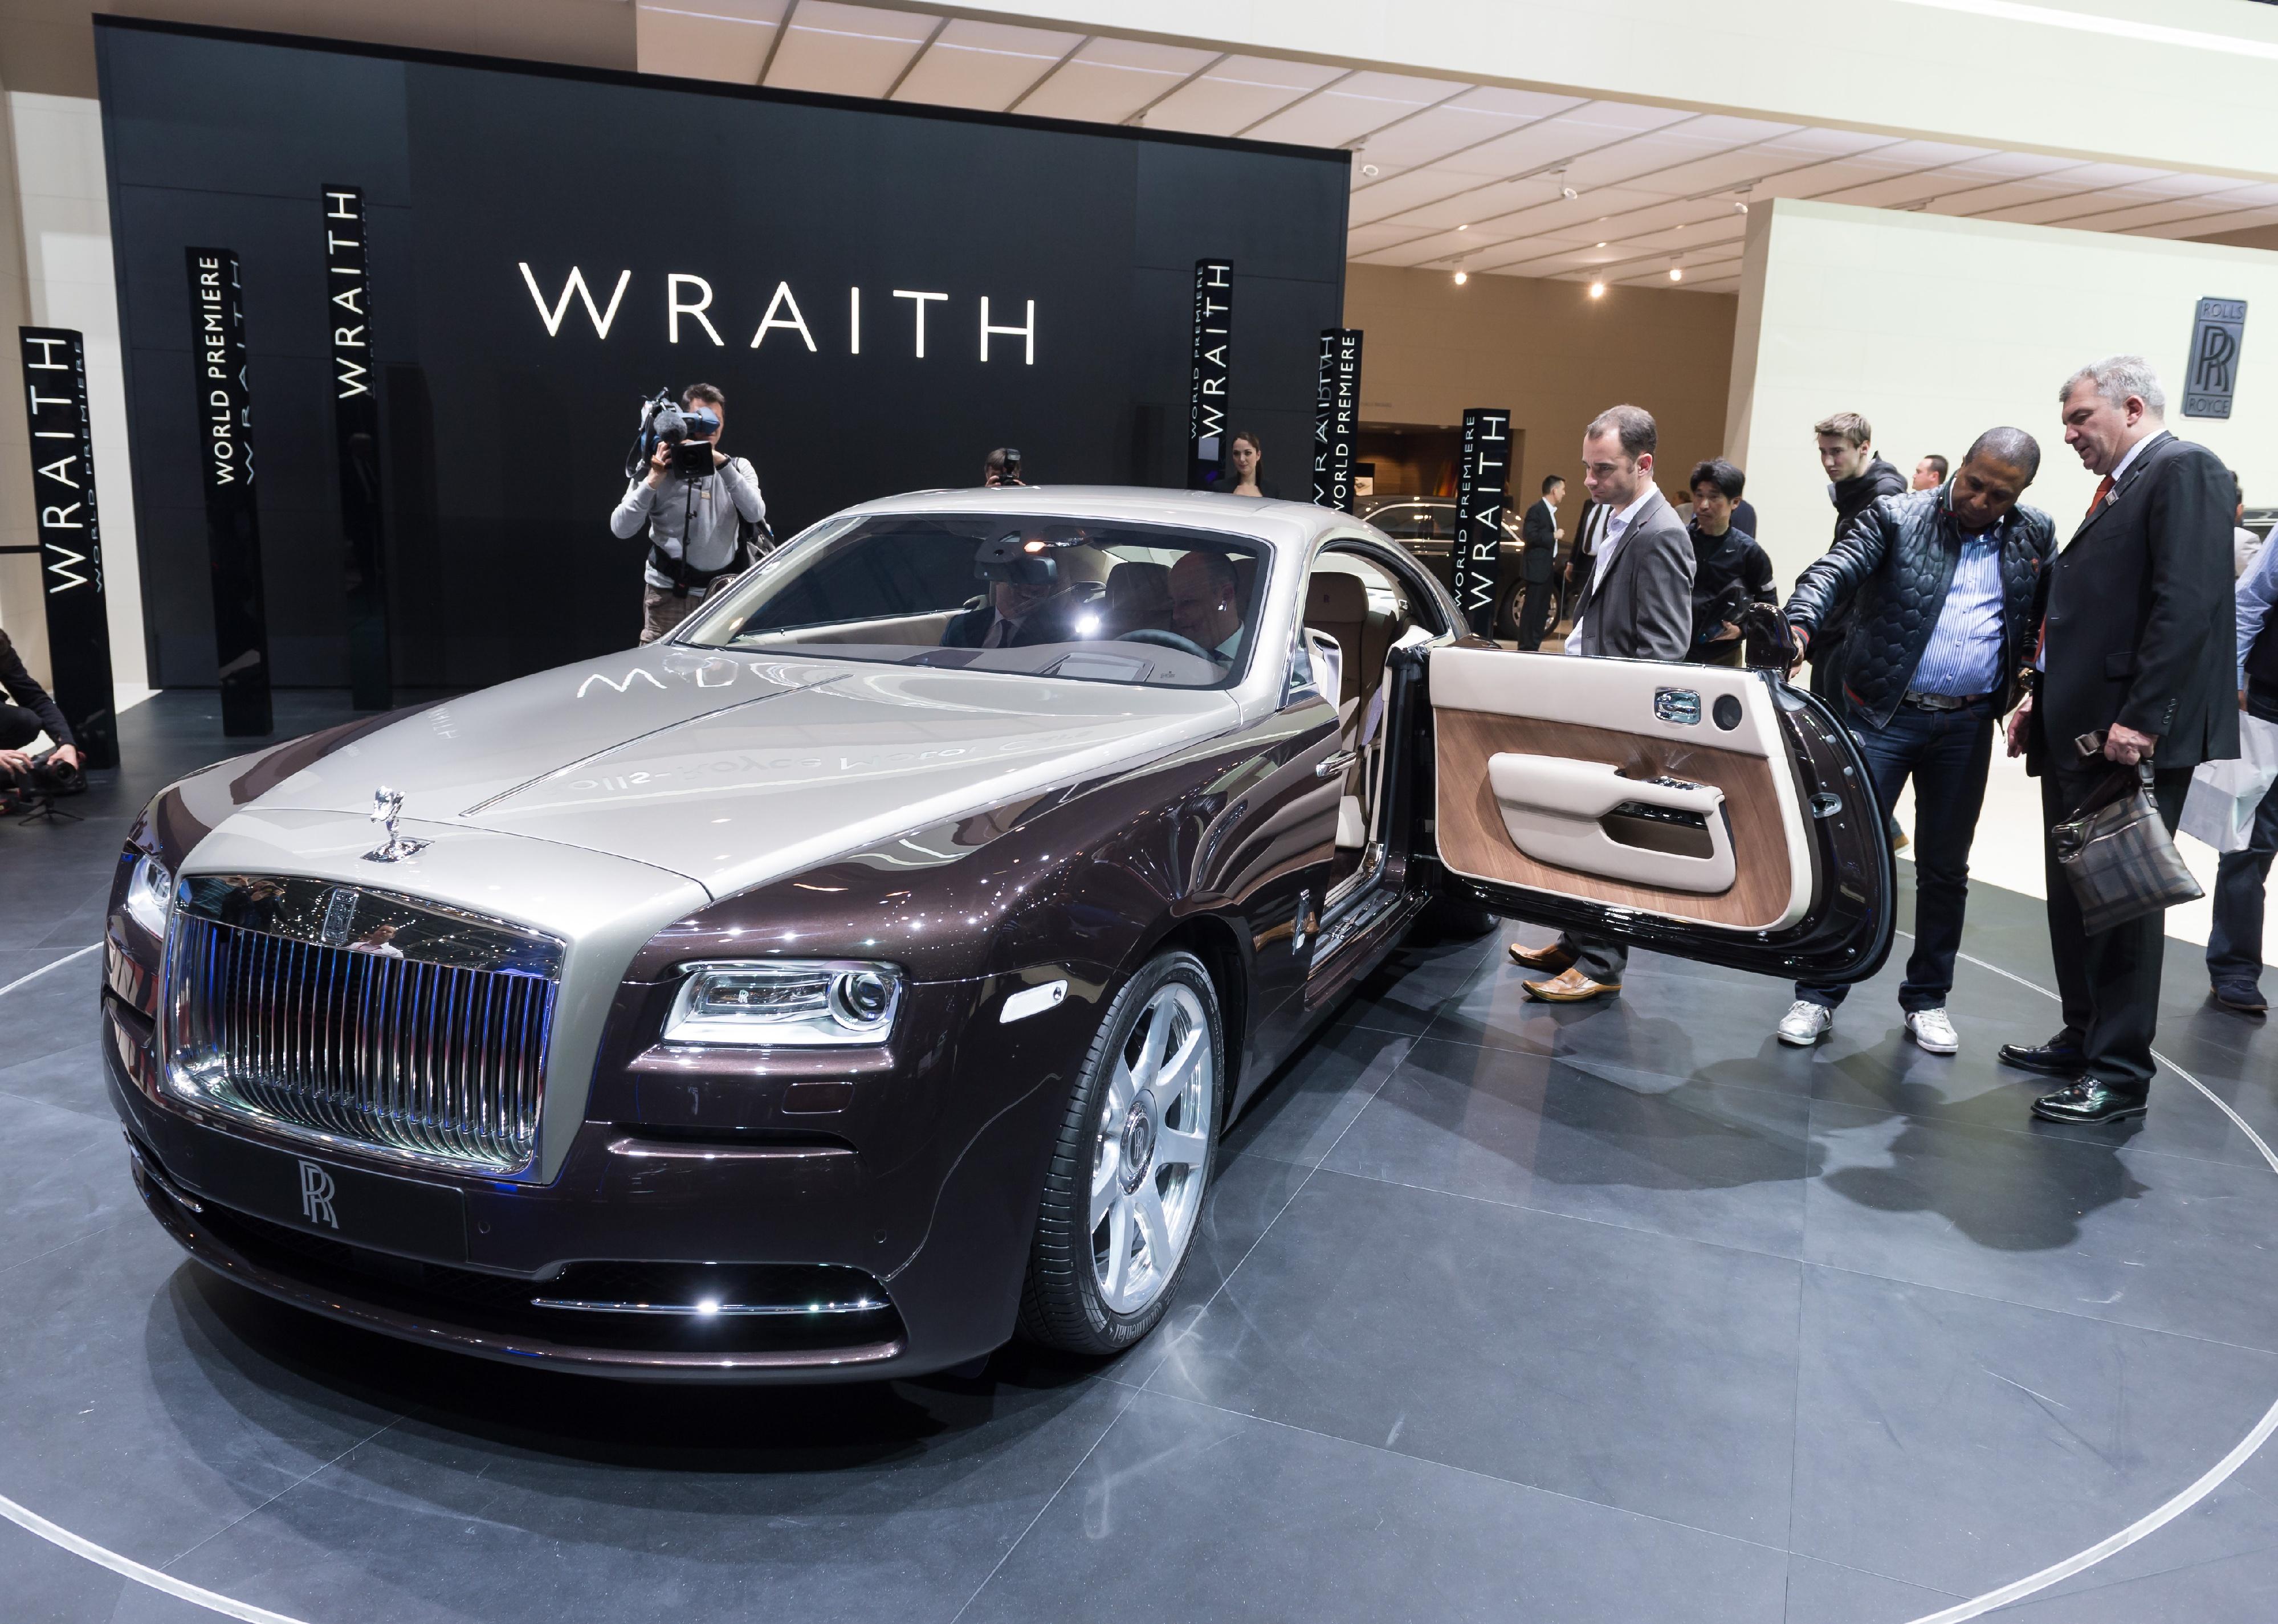 A Rolls Royce Wraith on a showroom floor.